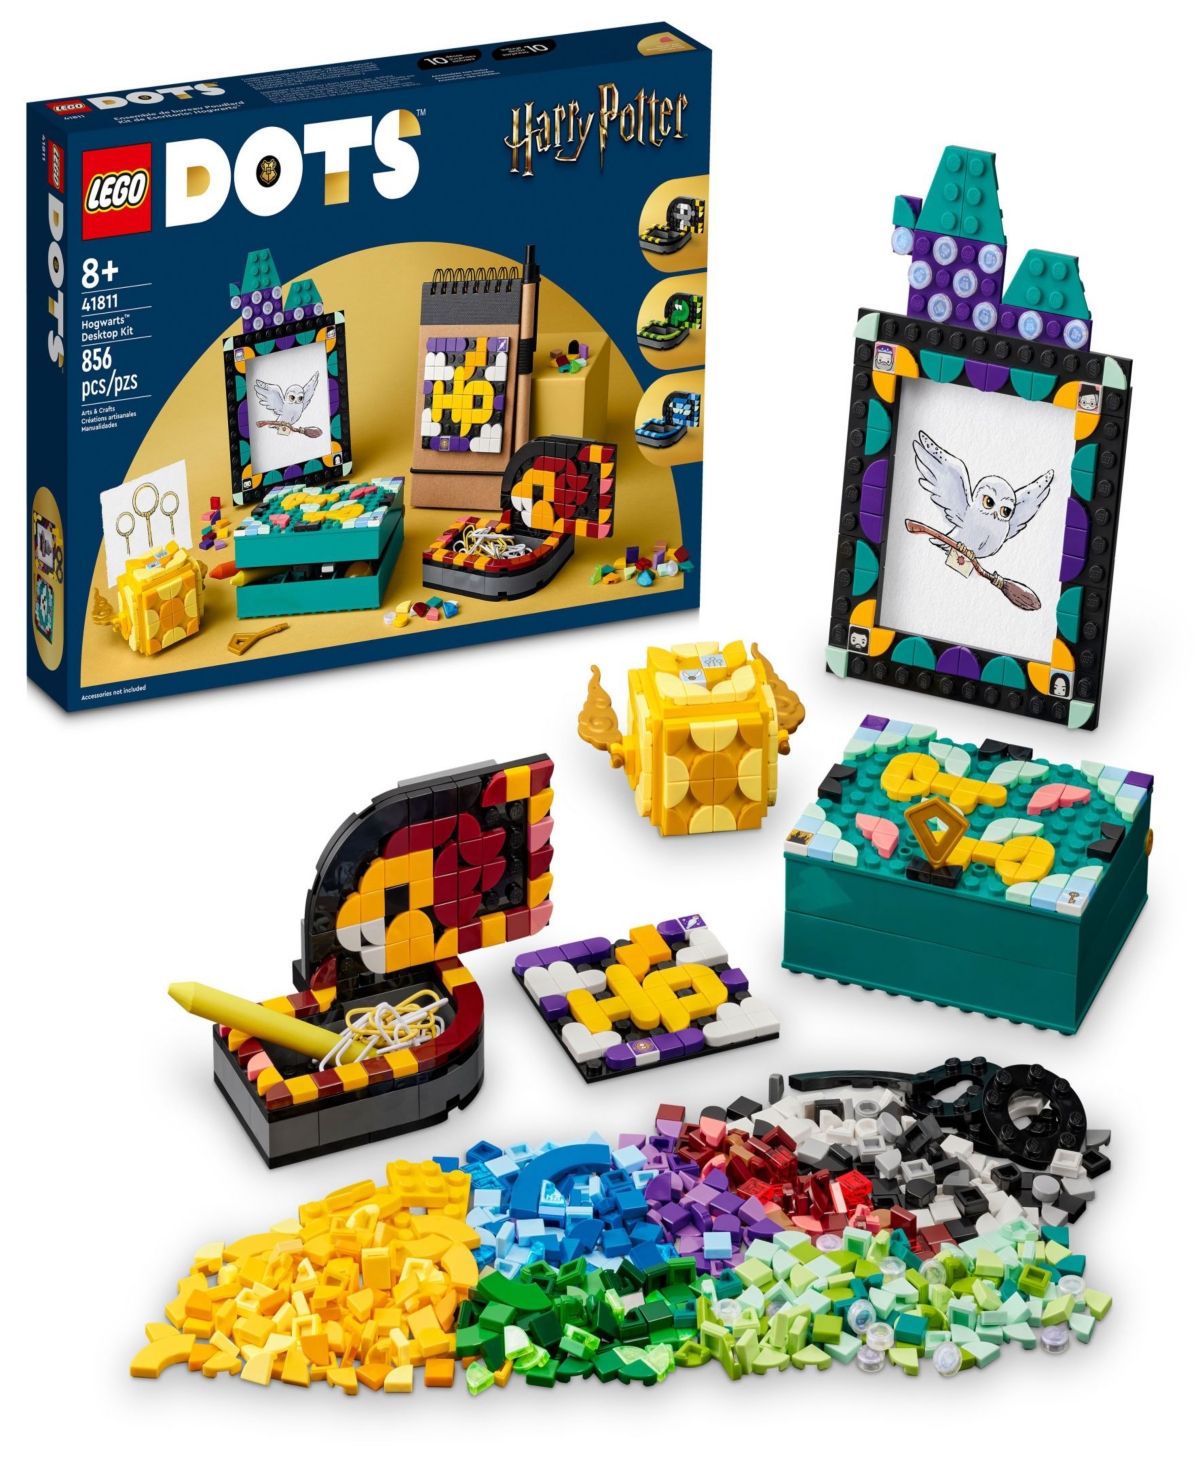 Lego Kids' Dots Hogwarts Desktop Kit 41811 Diy Craft Decoration Kit, 856 Pieces In Multicolor